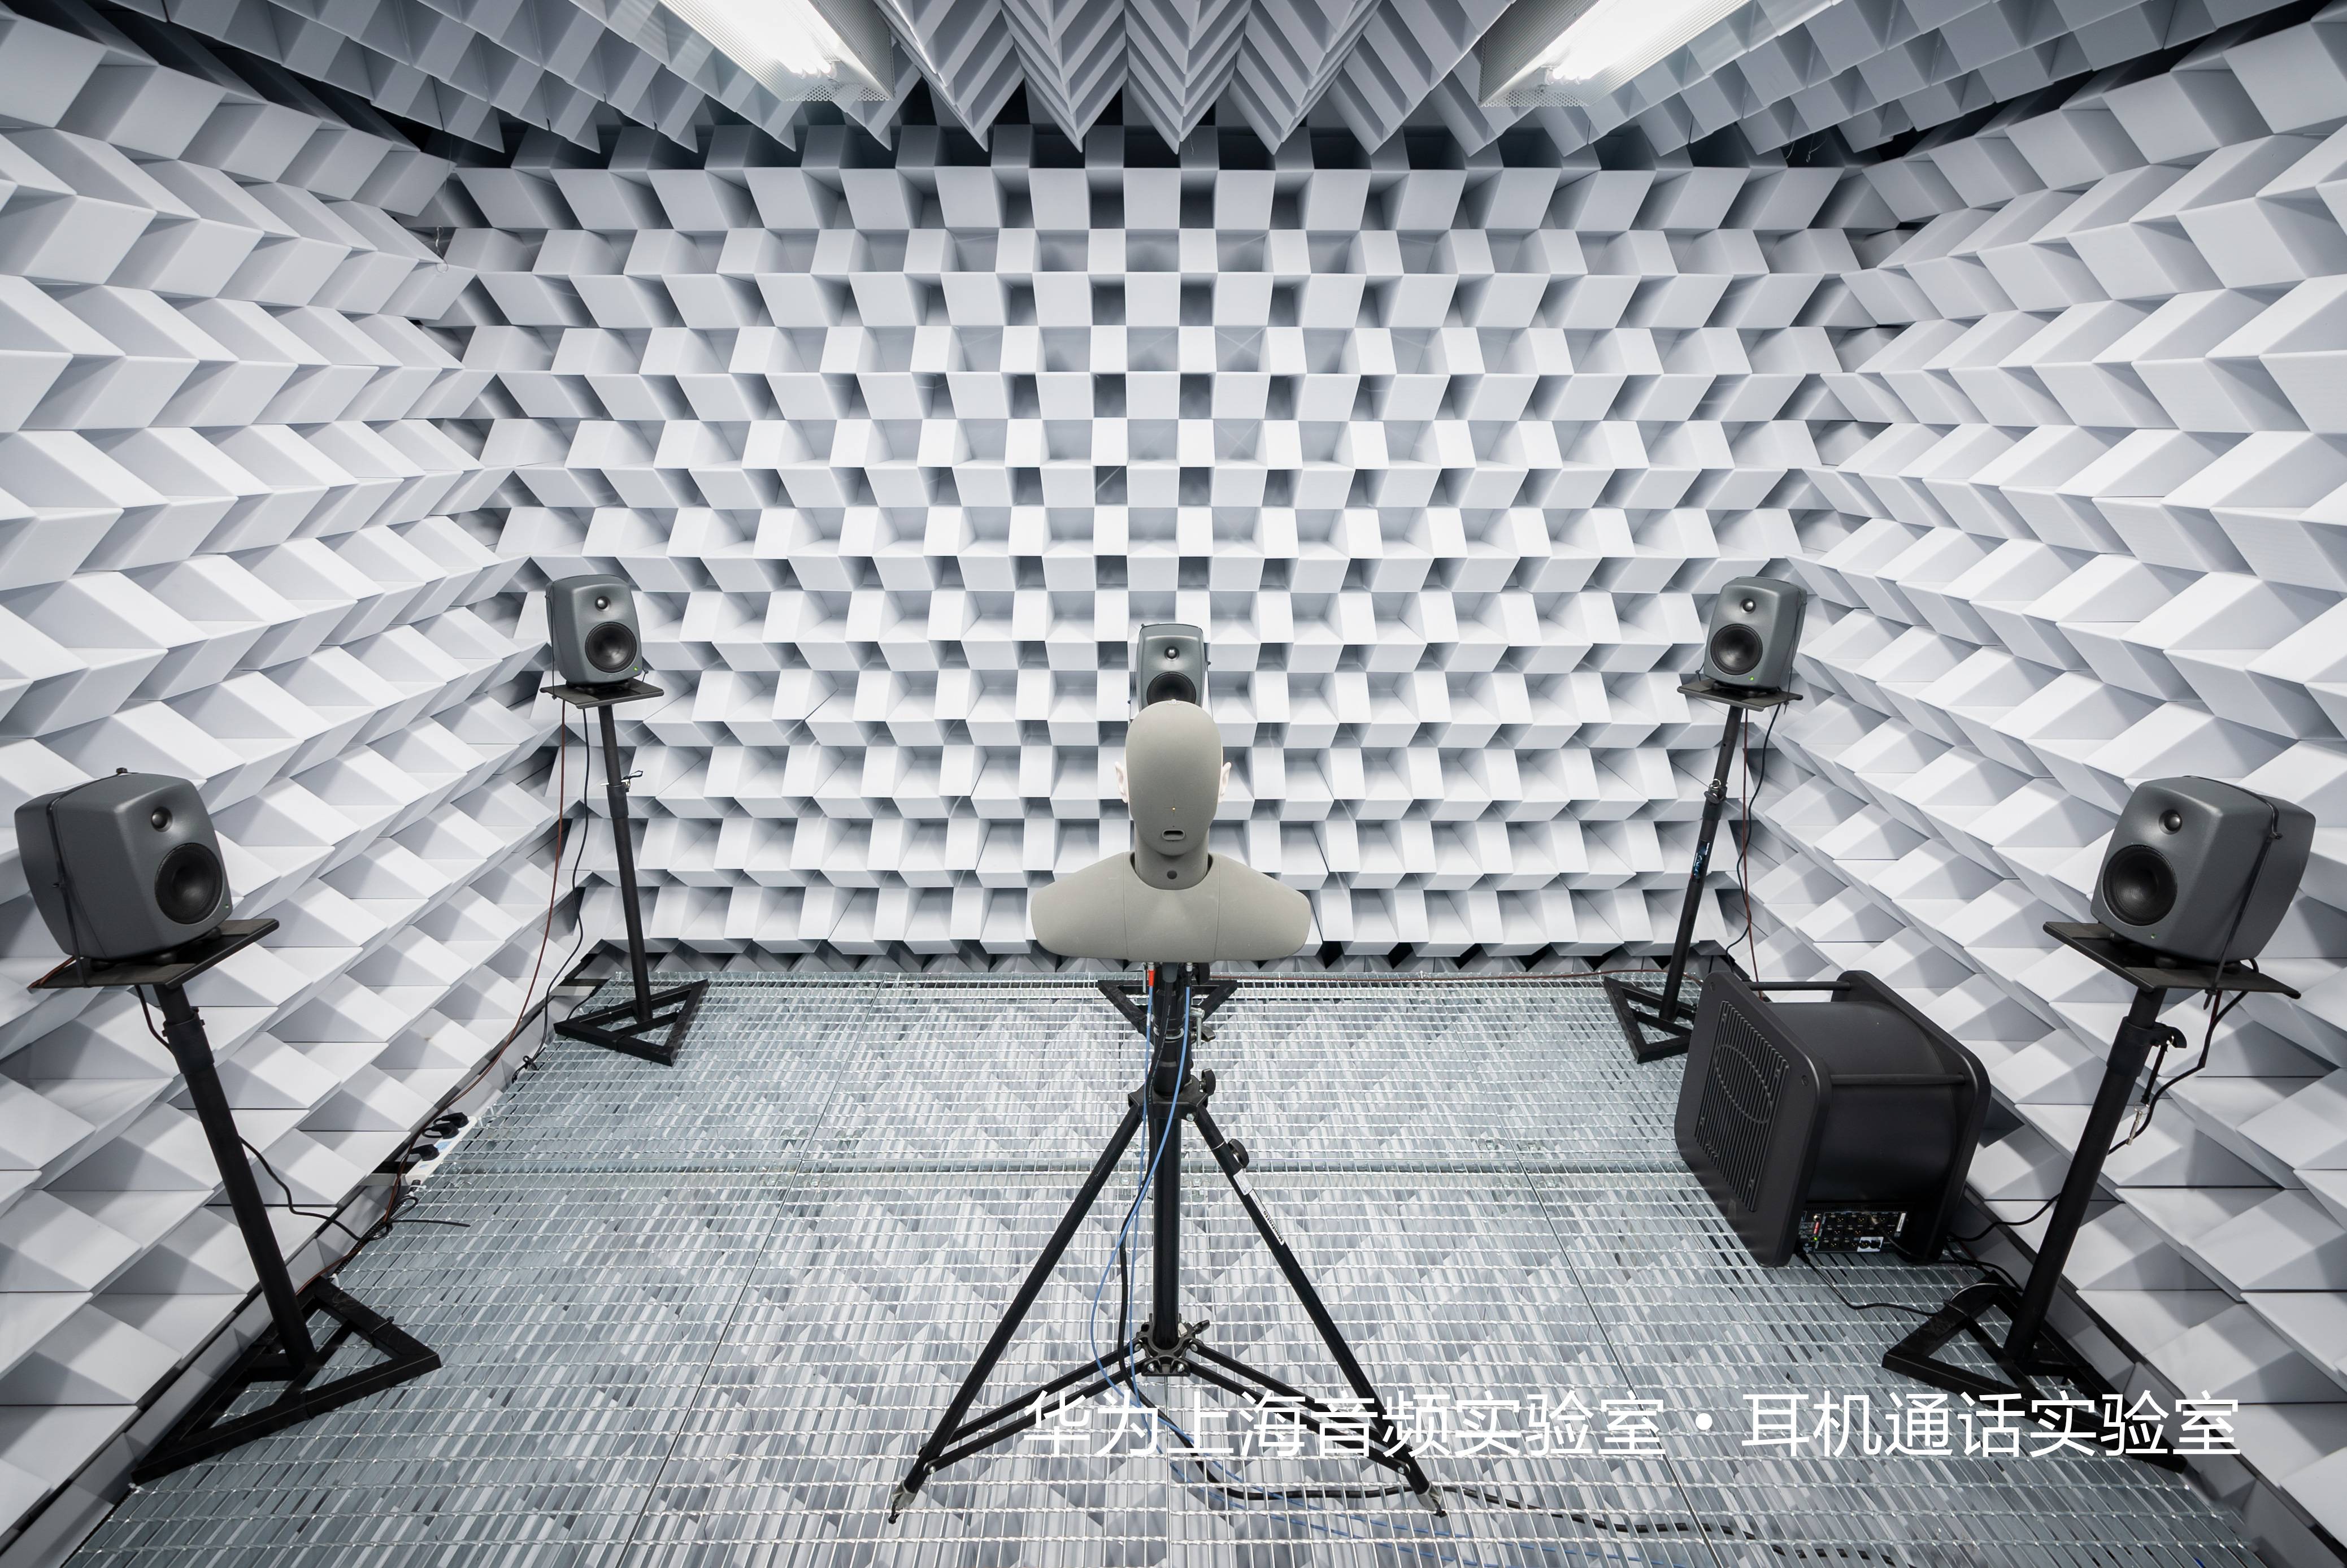 IMG 4620 - Il più grande laboratorio audio di Huawei, quali segreti ci sono?